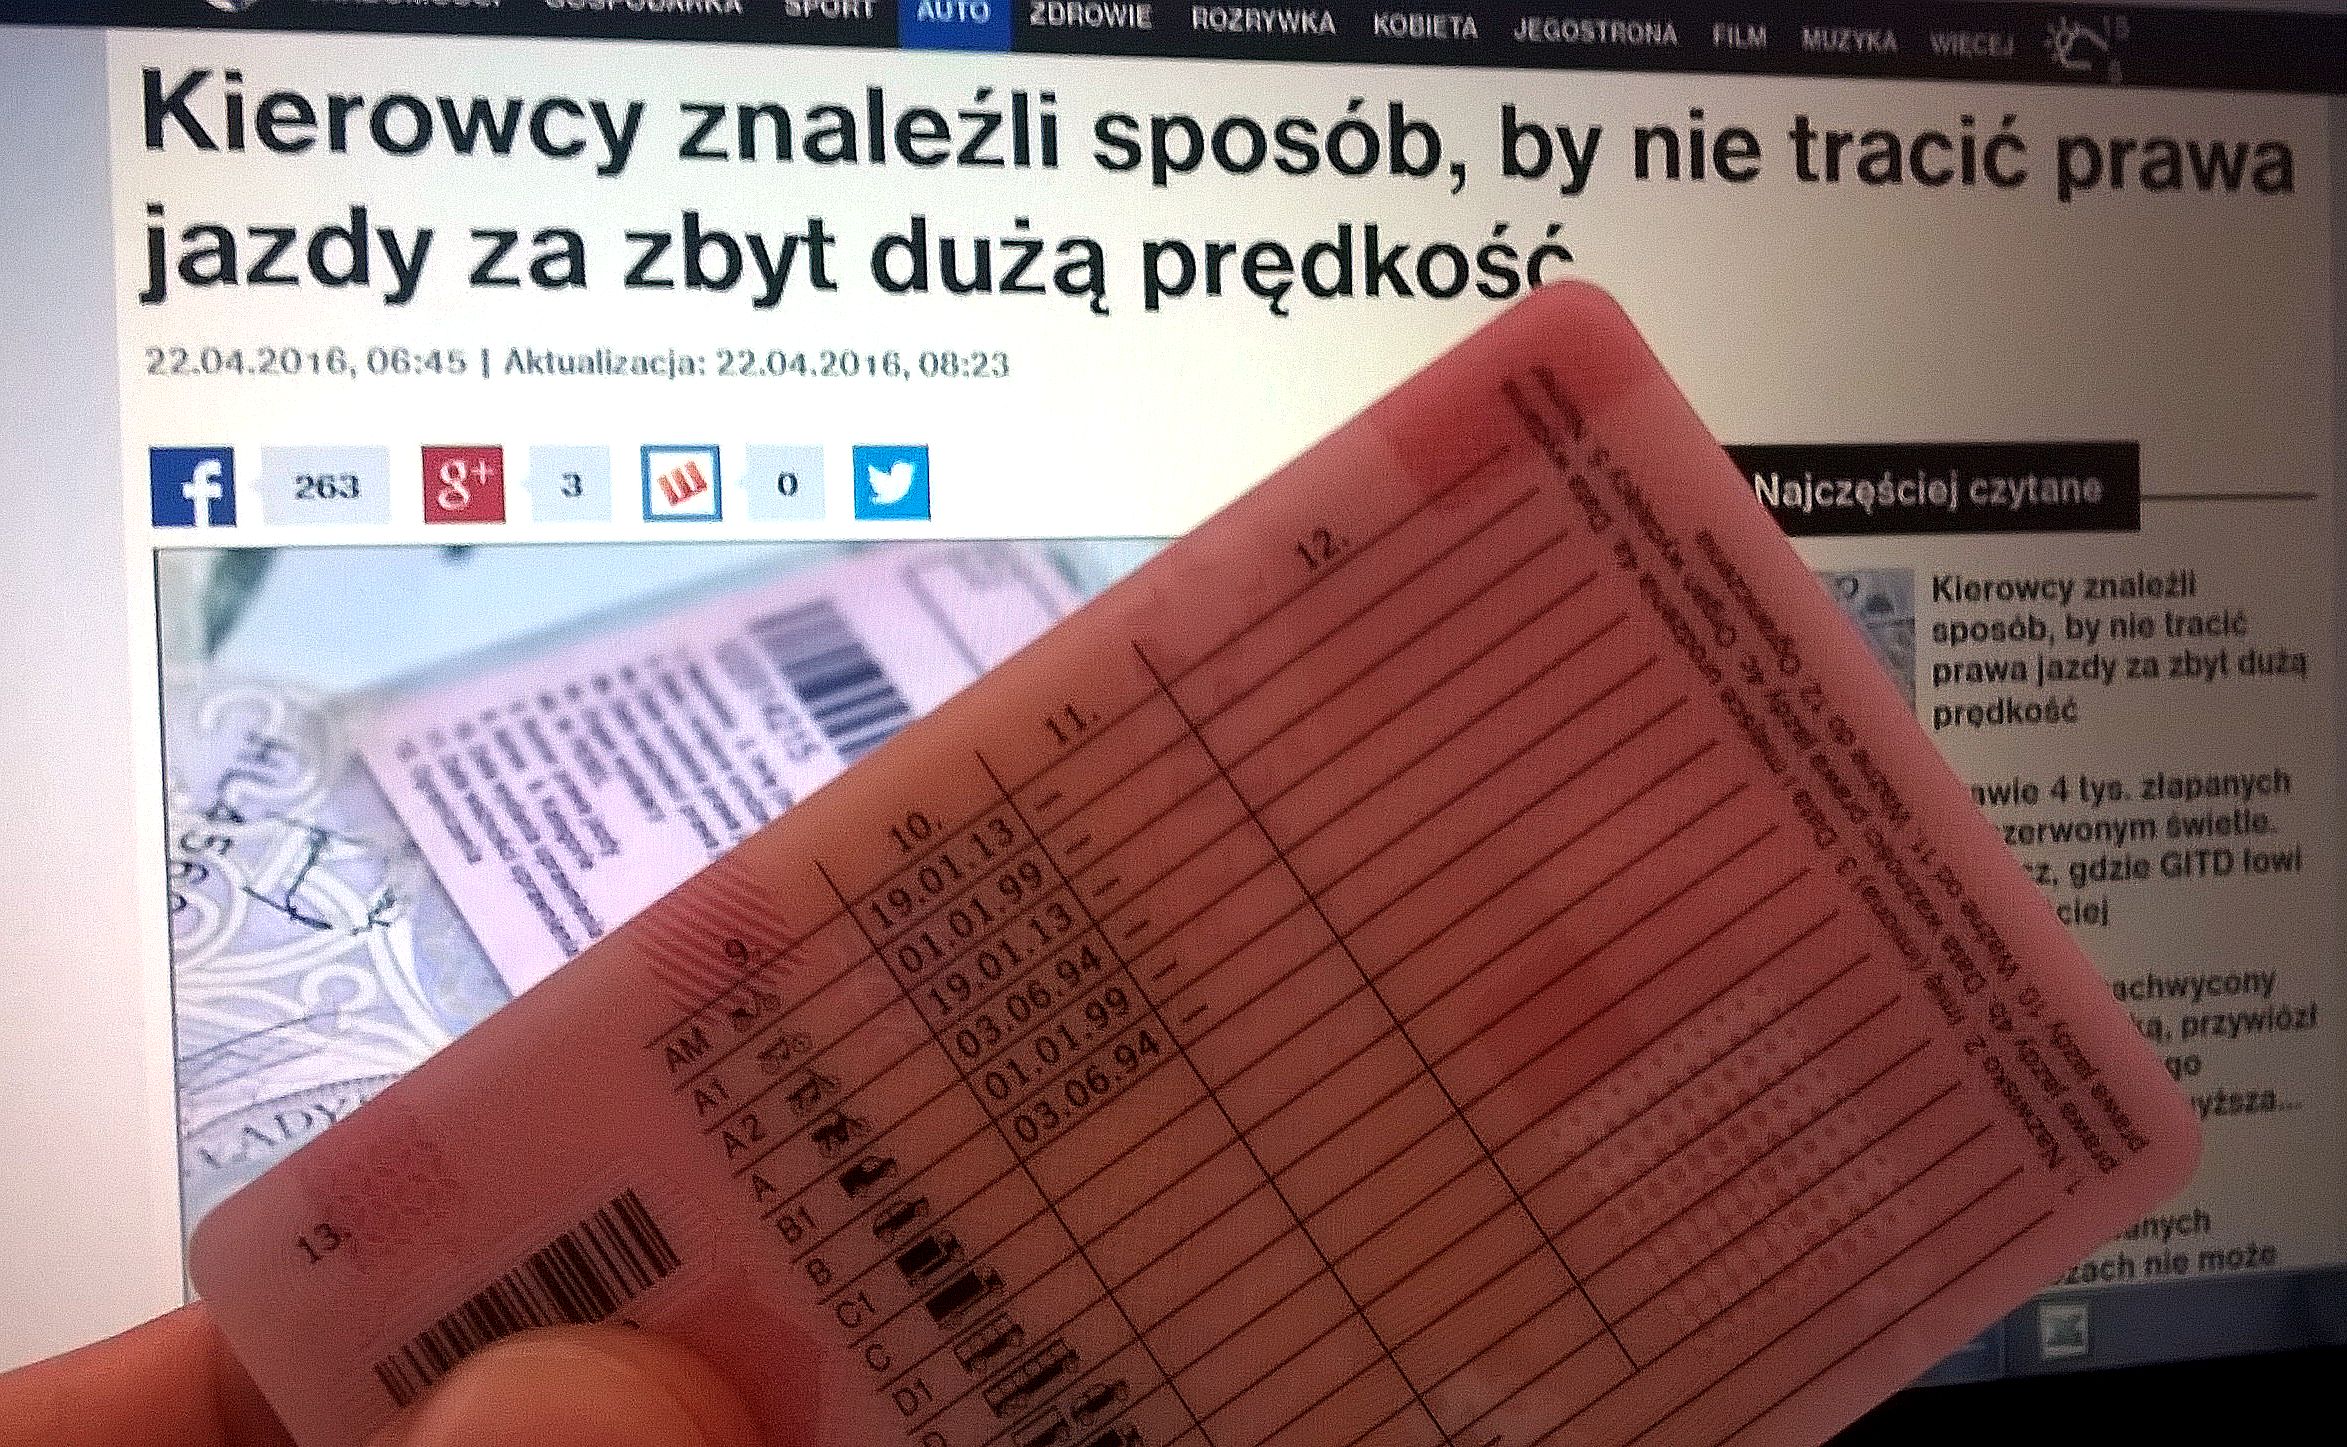 Nie mam ze sobą prawa jazdy, więc mi go nie zabiorą? Sprawdzamy "sposób" na  karę za zbyt szybką jazdę - Dziennik.pl